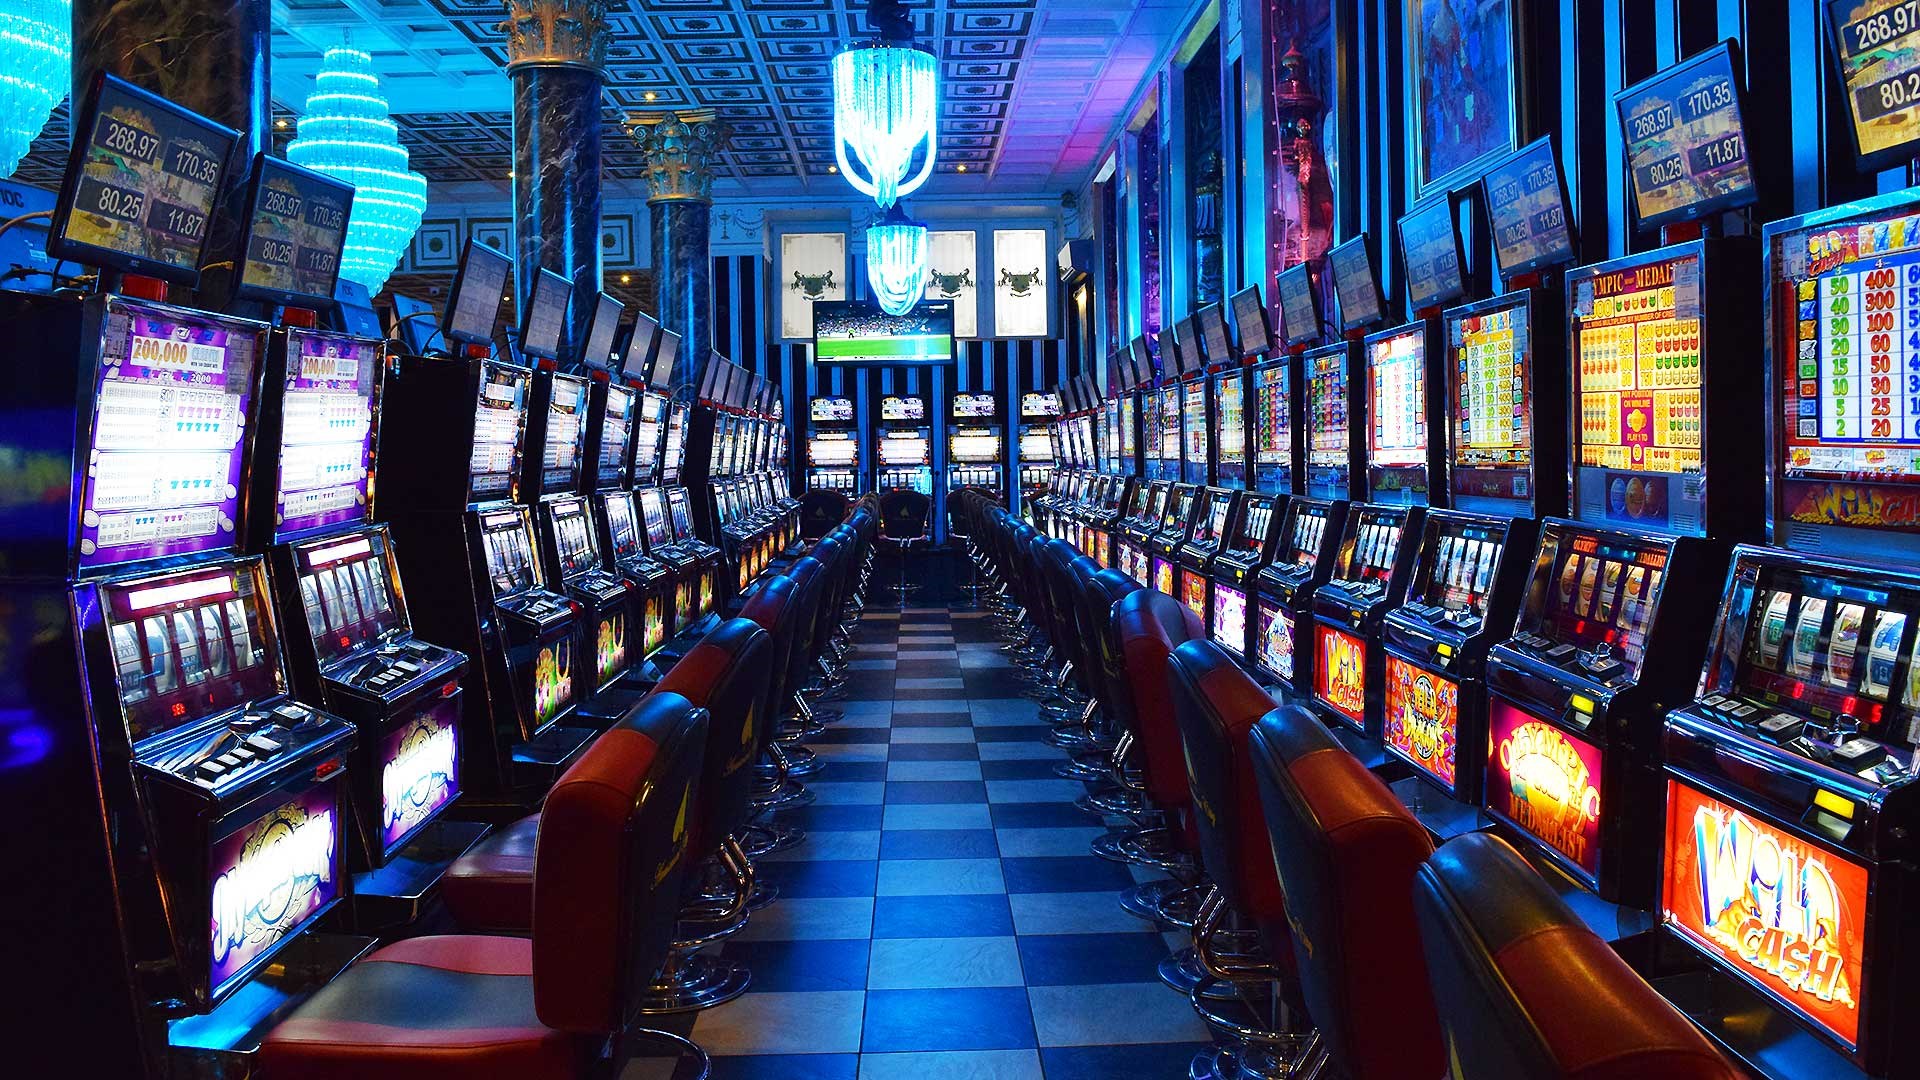 Slot Machine Online Casino